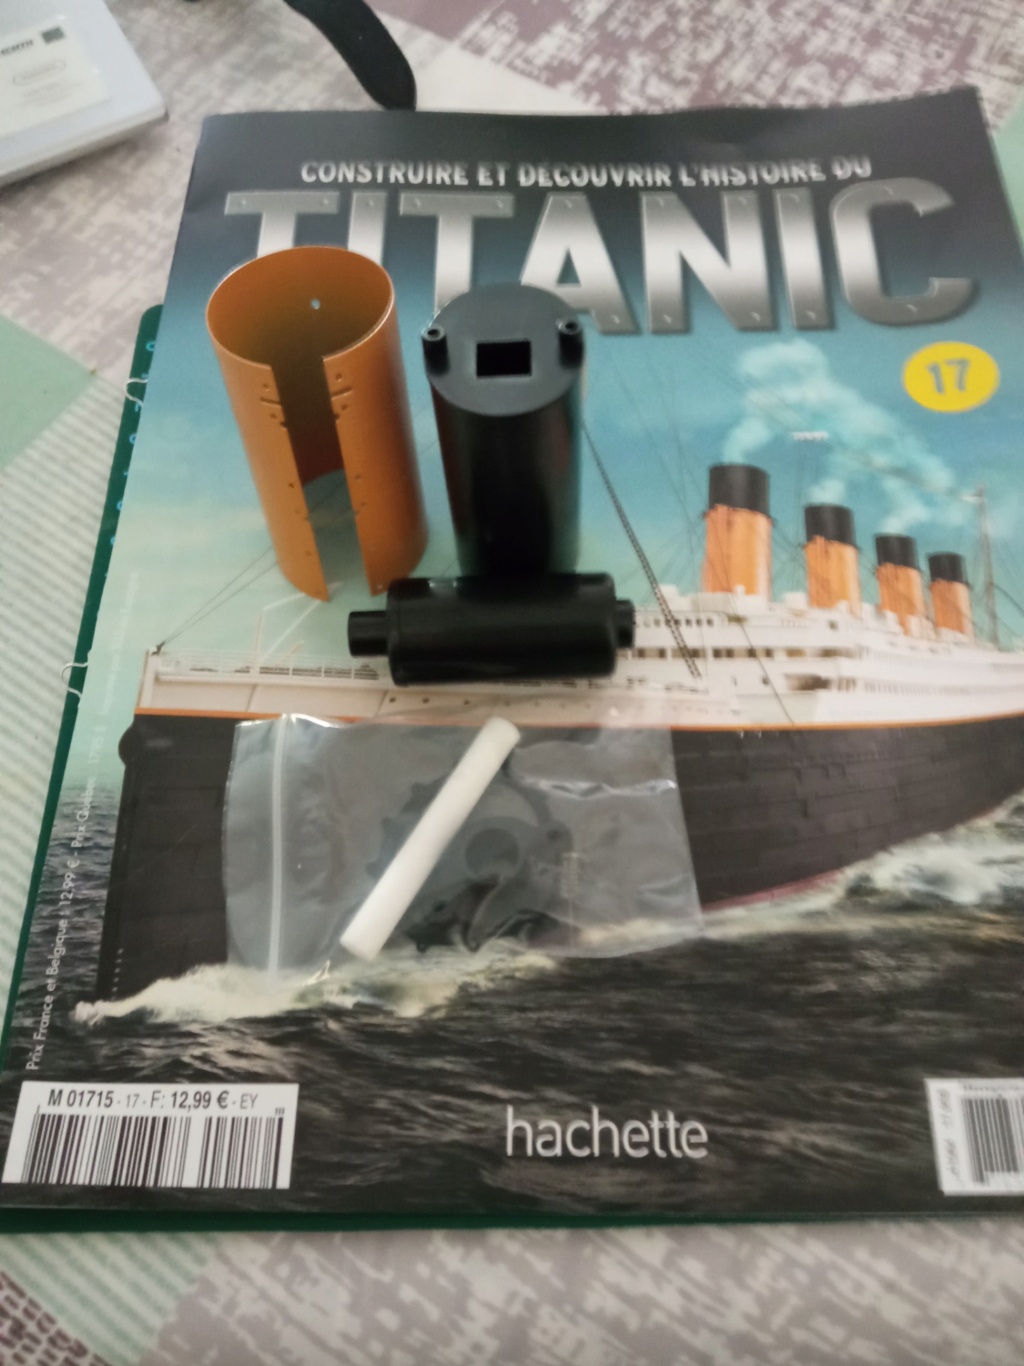 RMS Titanic [Hachette 1/200°] de clg78 - Page 4 17_111